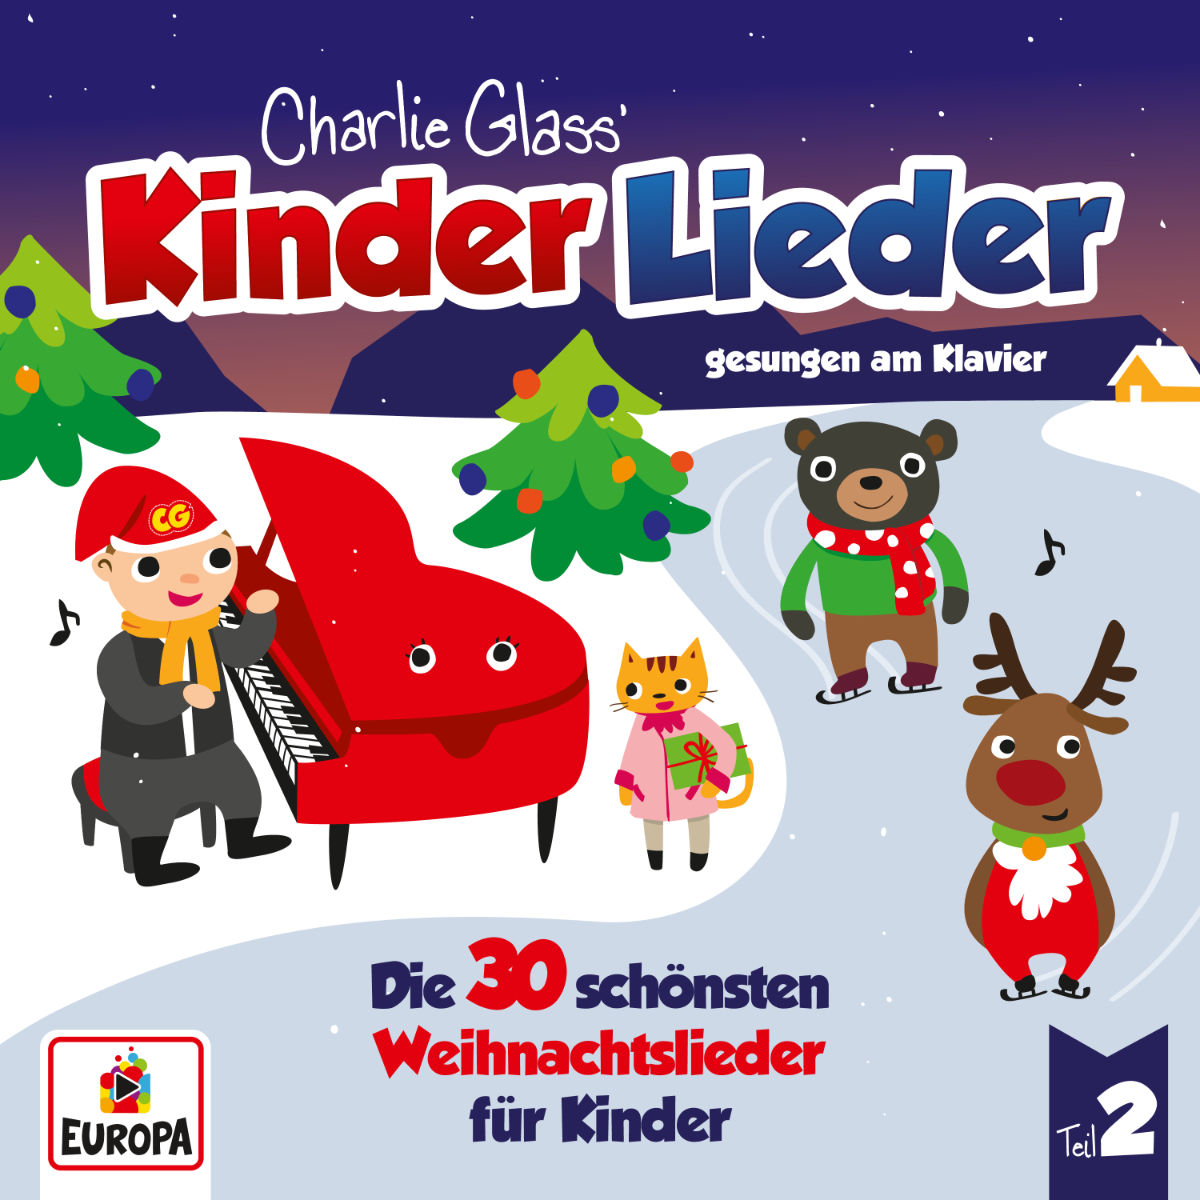 Die 30 schönsten Weihnachtslieder für Kinder - Teil 2